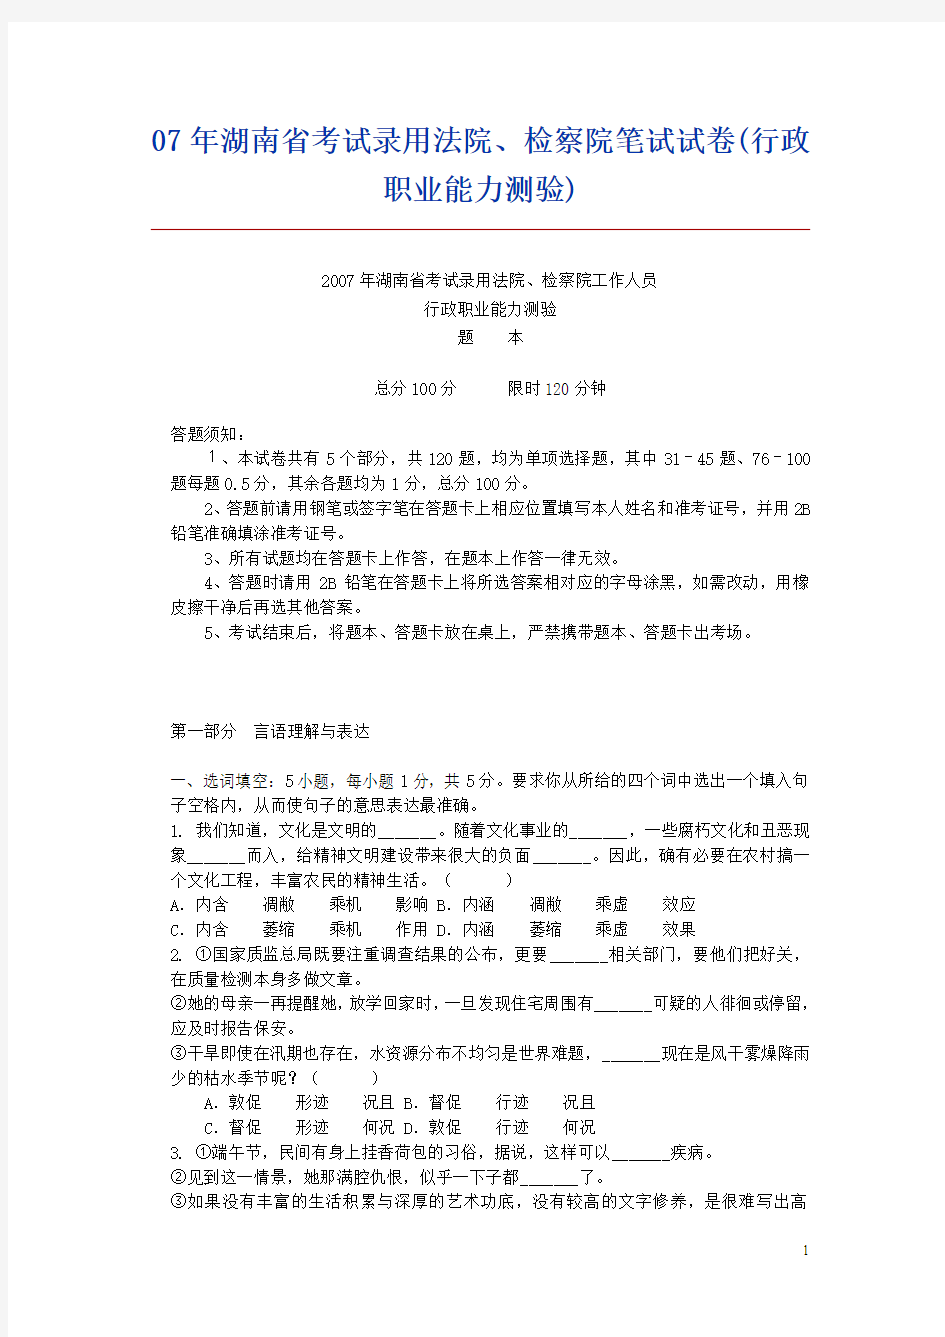 2007年湖南省考试录用法院、检察院笔试试卷(行政职业能力测验)